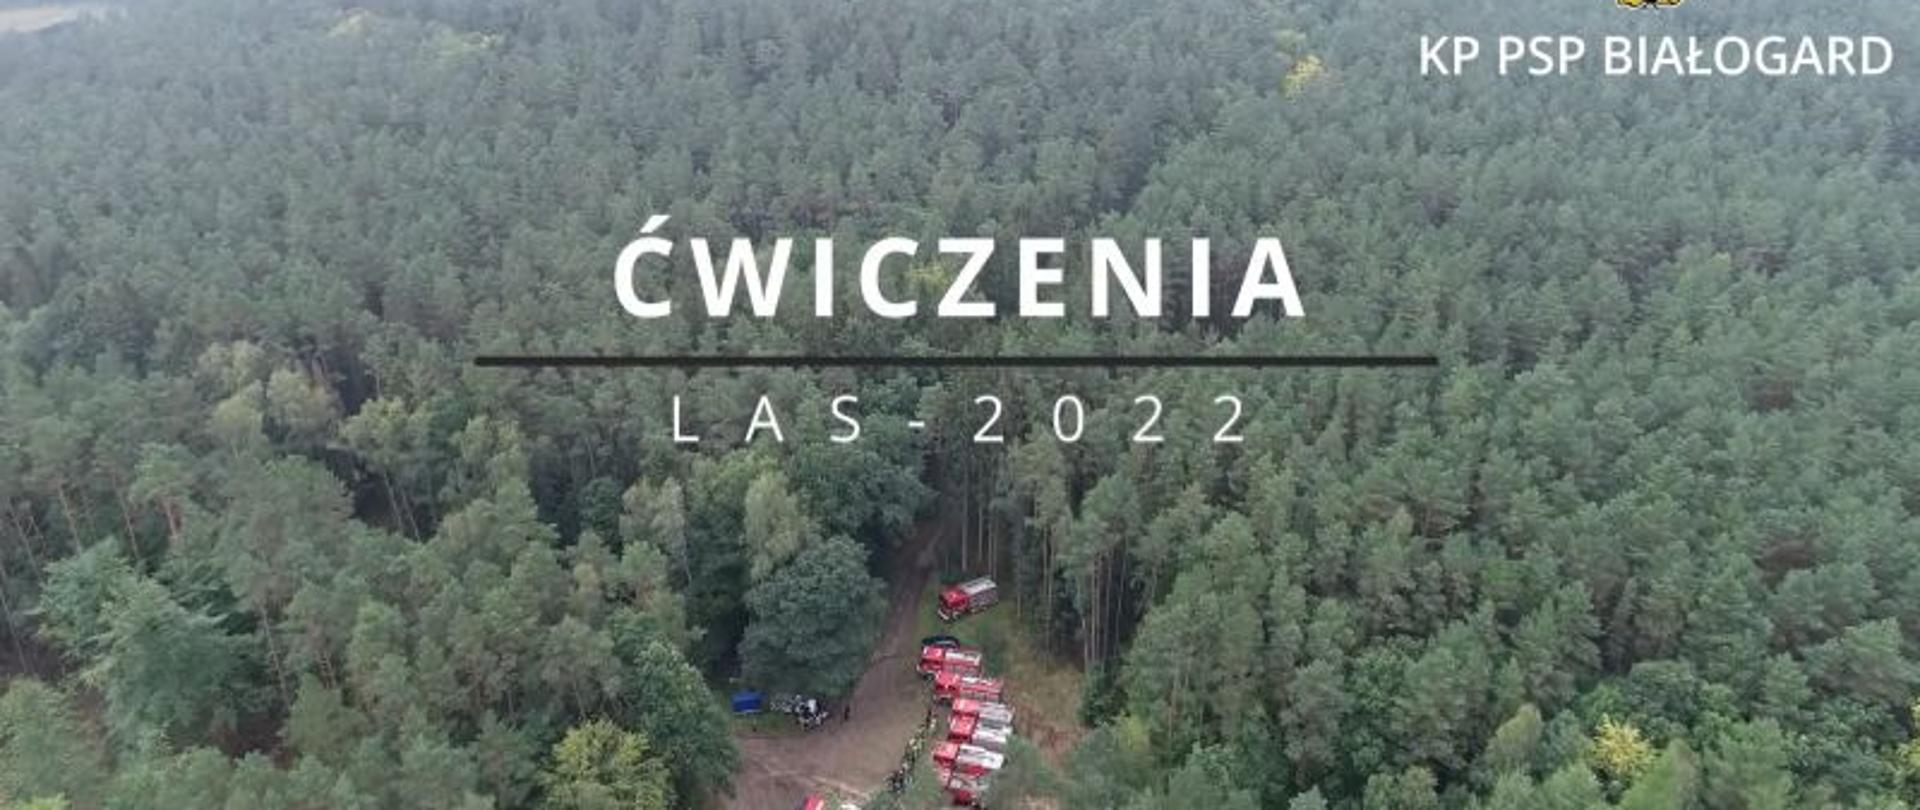 Zdjęcie przedstawia pierwszą klatkę z filmu wideo. Na środku widać tytuł LAS-2022. W prawym górnym rogu jest logo PSP. Na zdjęciu widać duży las i szare lekko przychmurzone niebo. Zdjęcie wykonane z lotu ptaka, z drona.